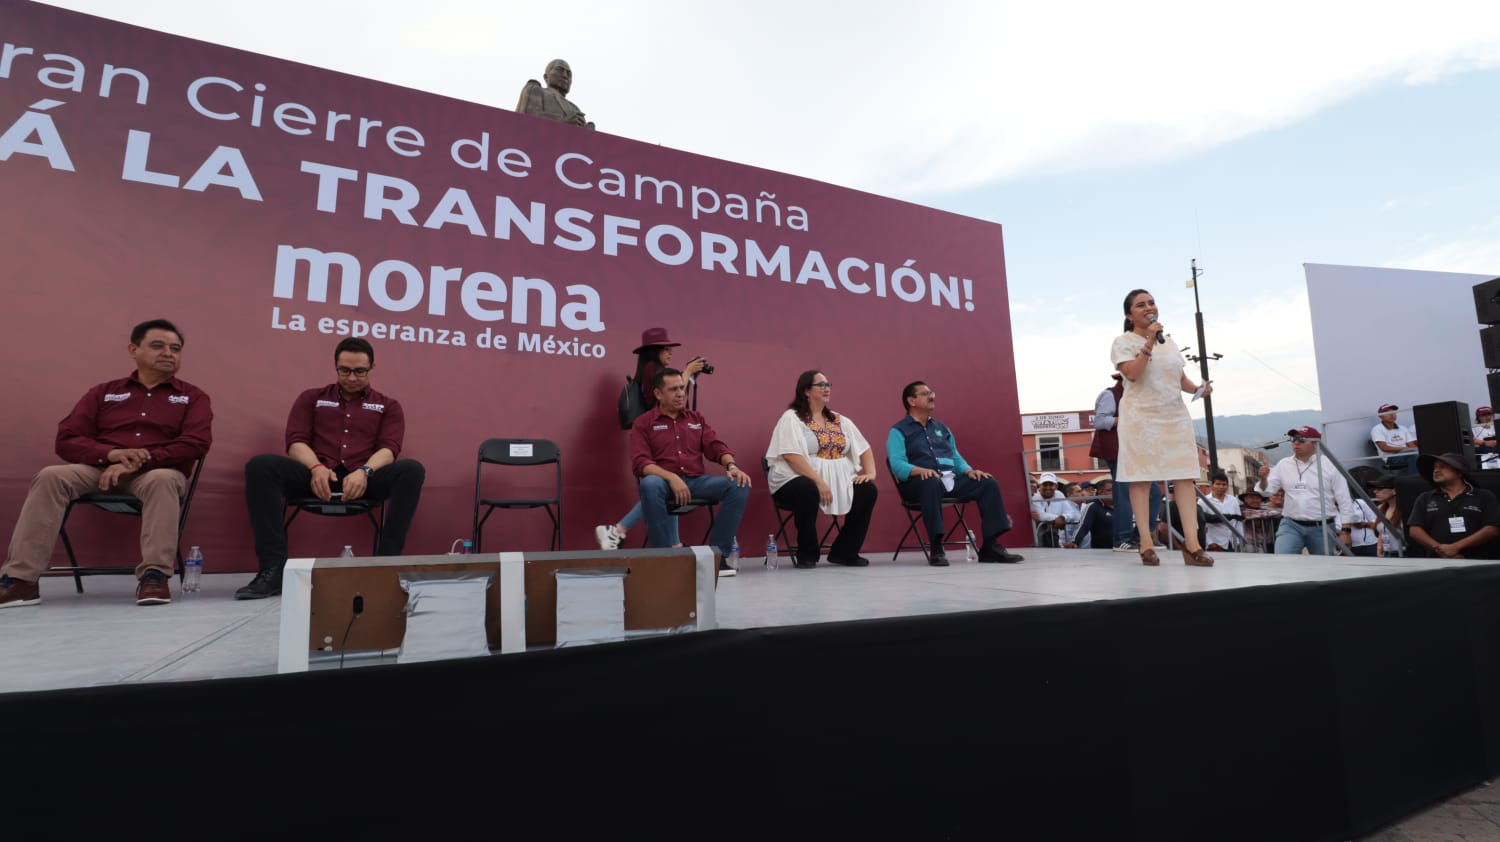 Morena cierre de campaña Hidalgo